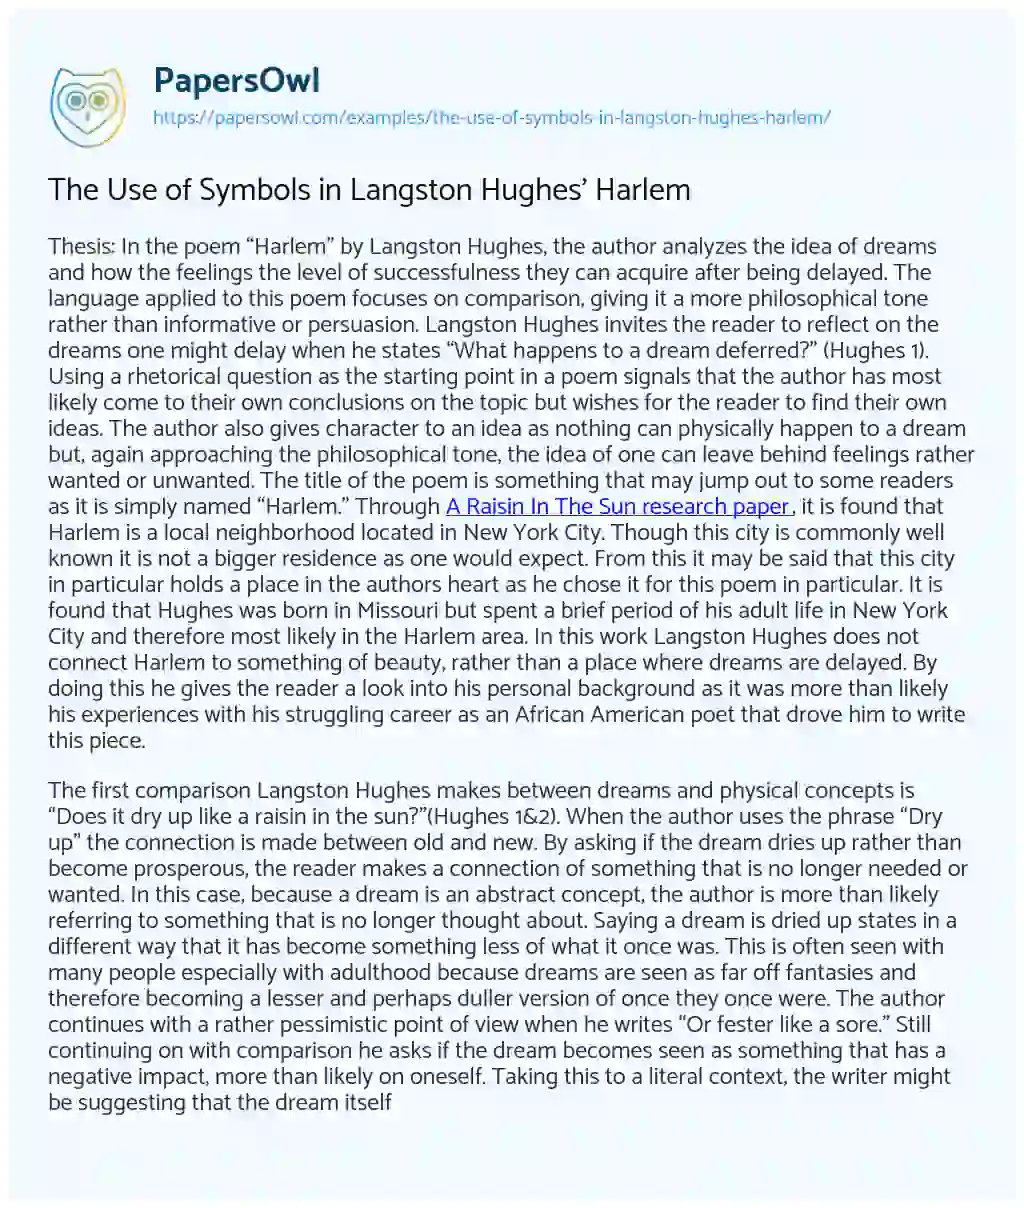 The Use of Symbols in Langston Hughes’ Harlem essay